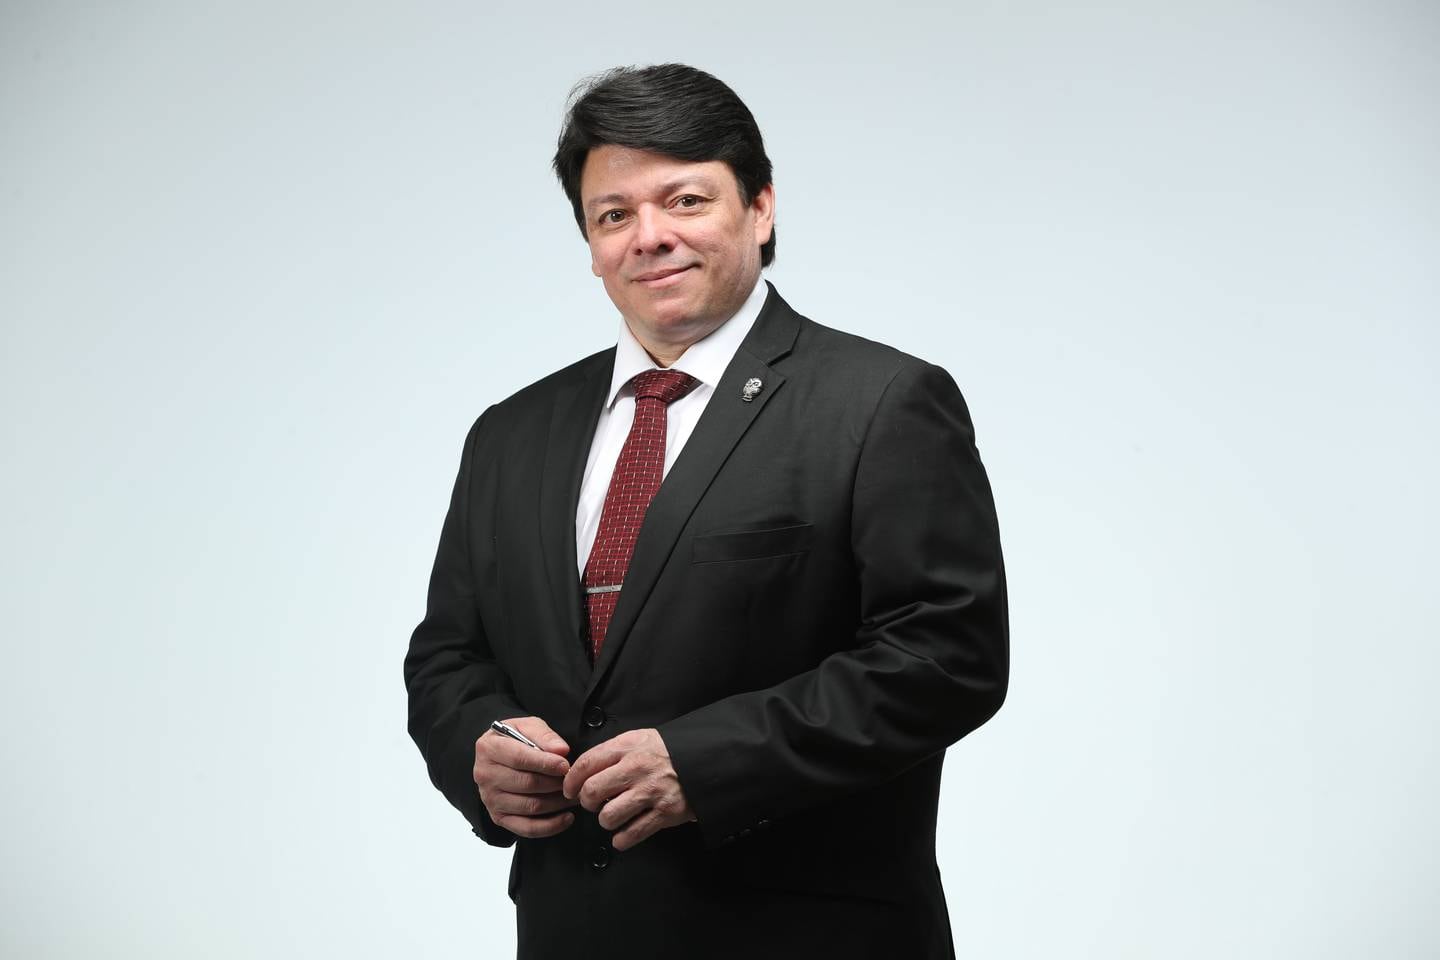 Boris Acosta Castro